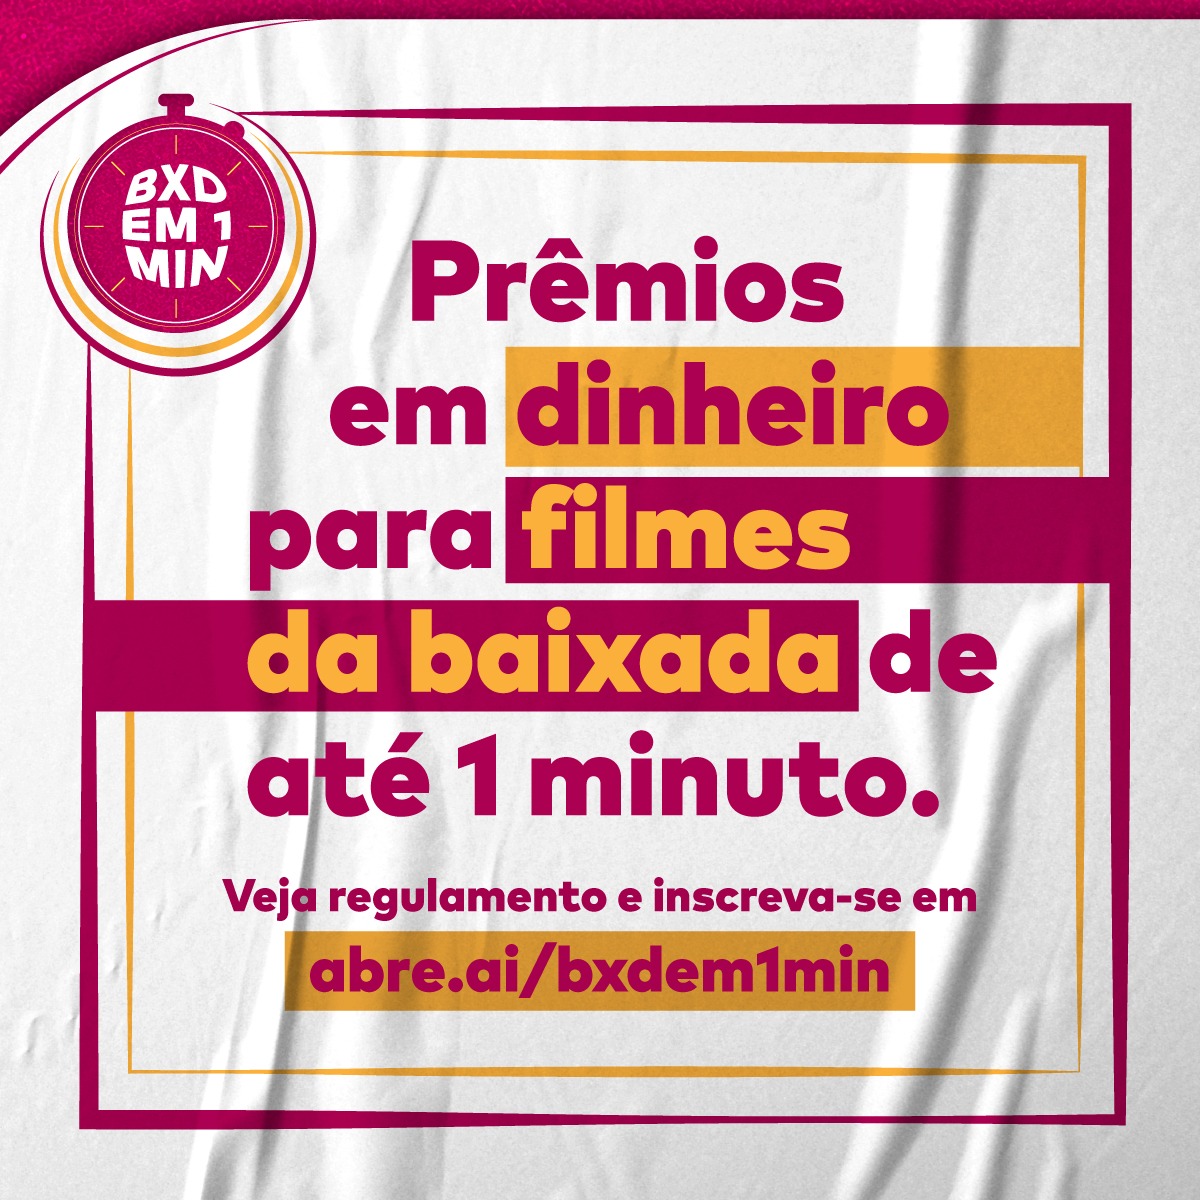 Read more about the article Cineclube Mate Com Angu lança mais uma edição do concurso Baixada 1 Minuto